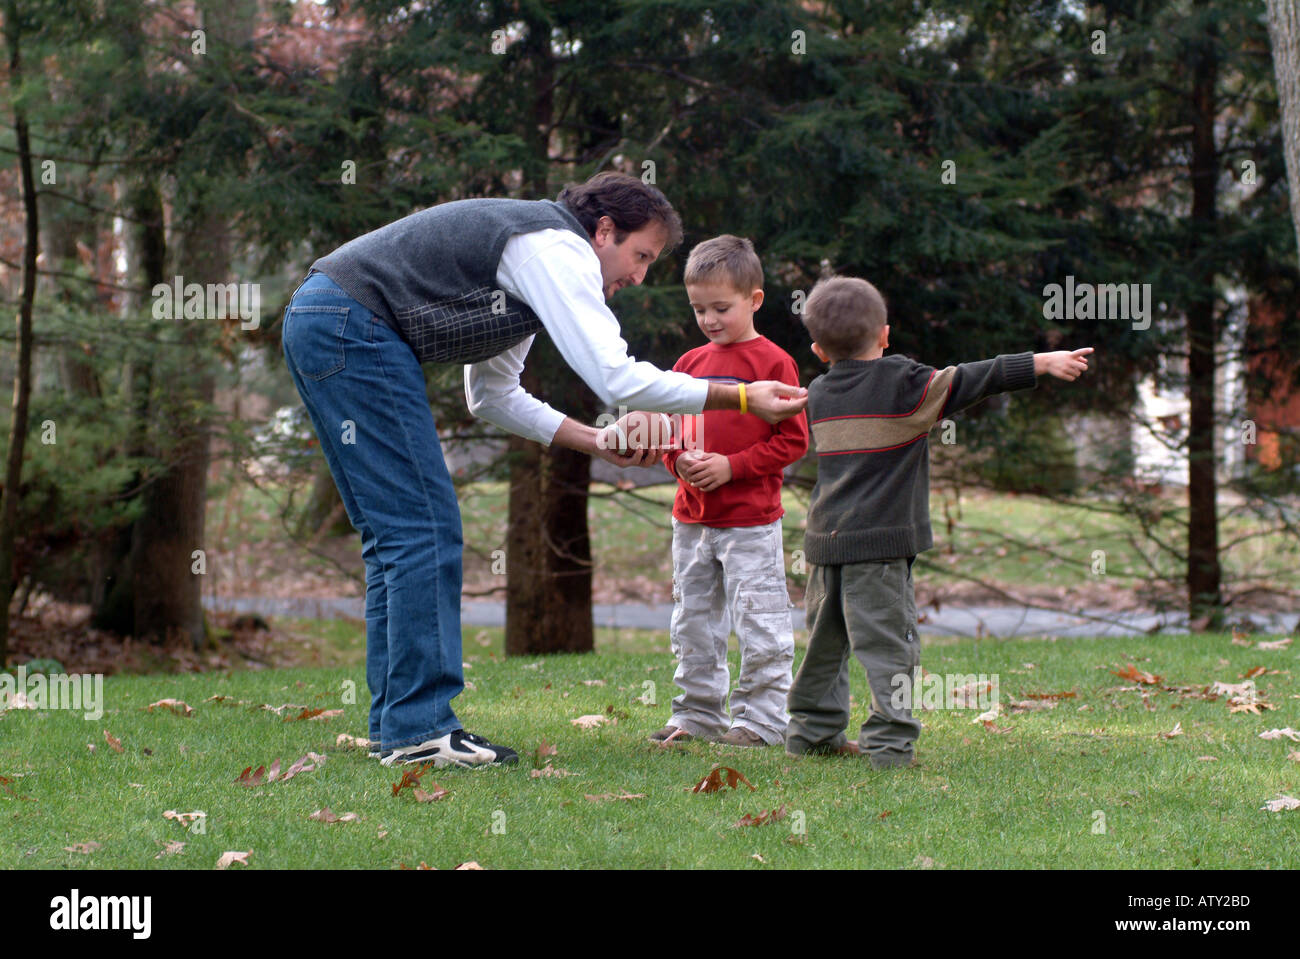 Les membres masculins de la famille élargie jouent au football dans leur cour avant le jour de Thanksgiving Banque D'Images